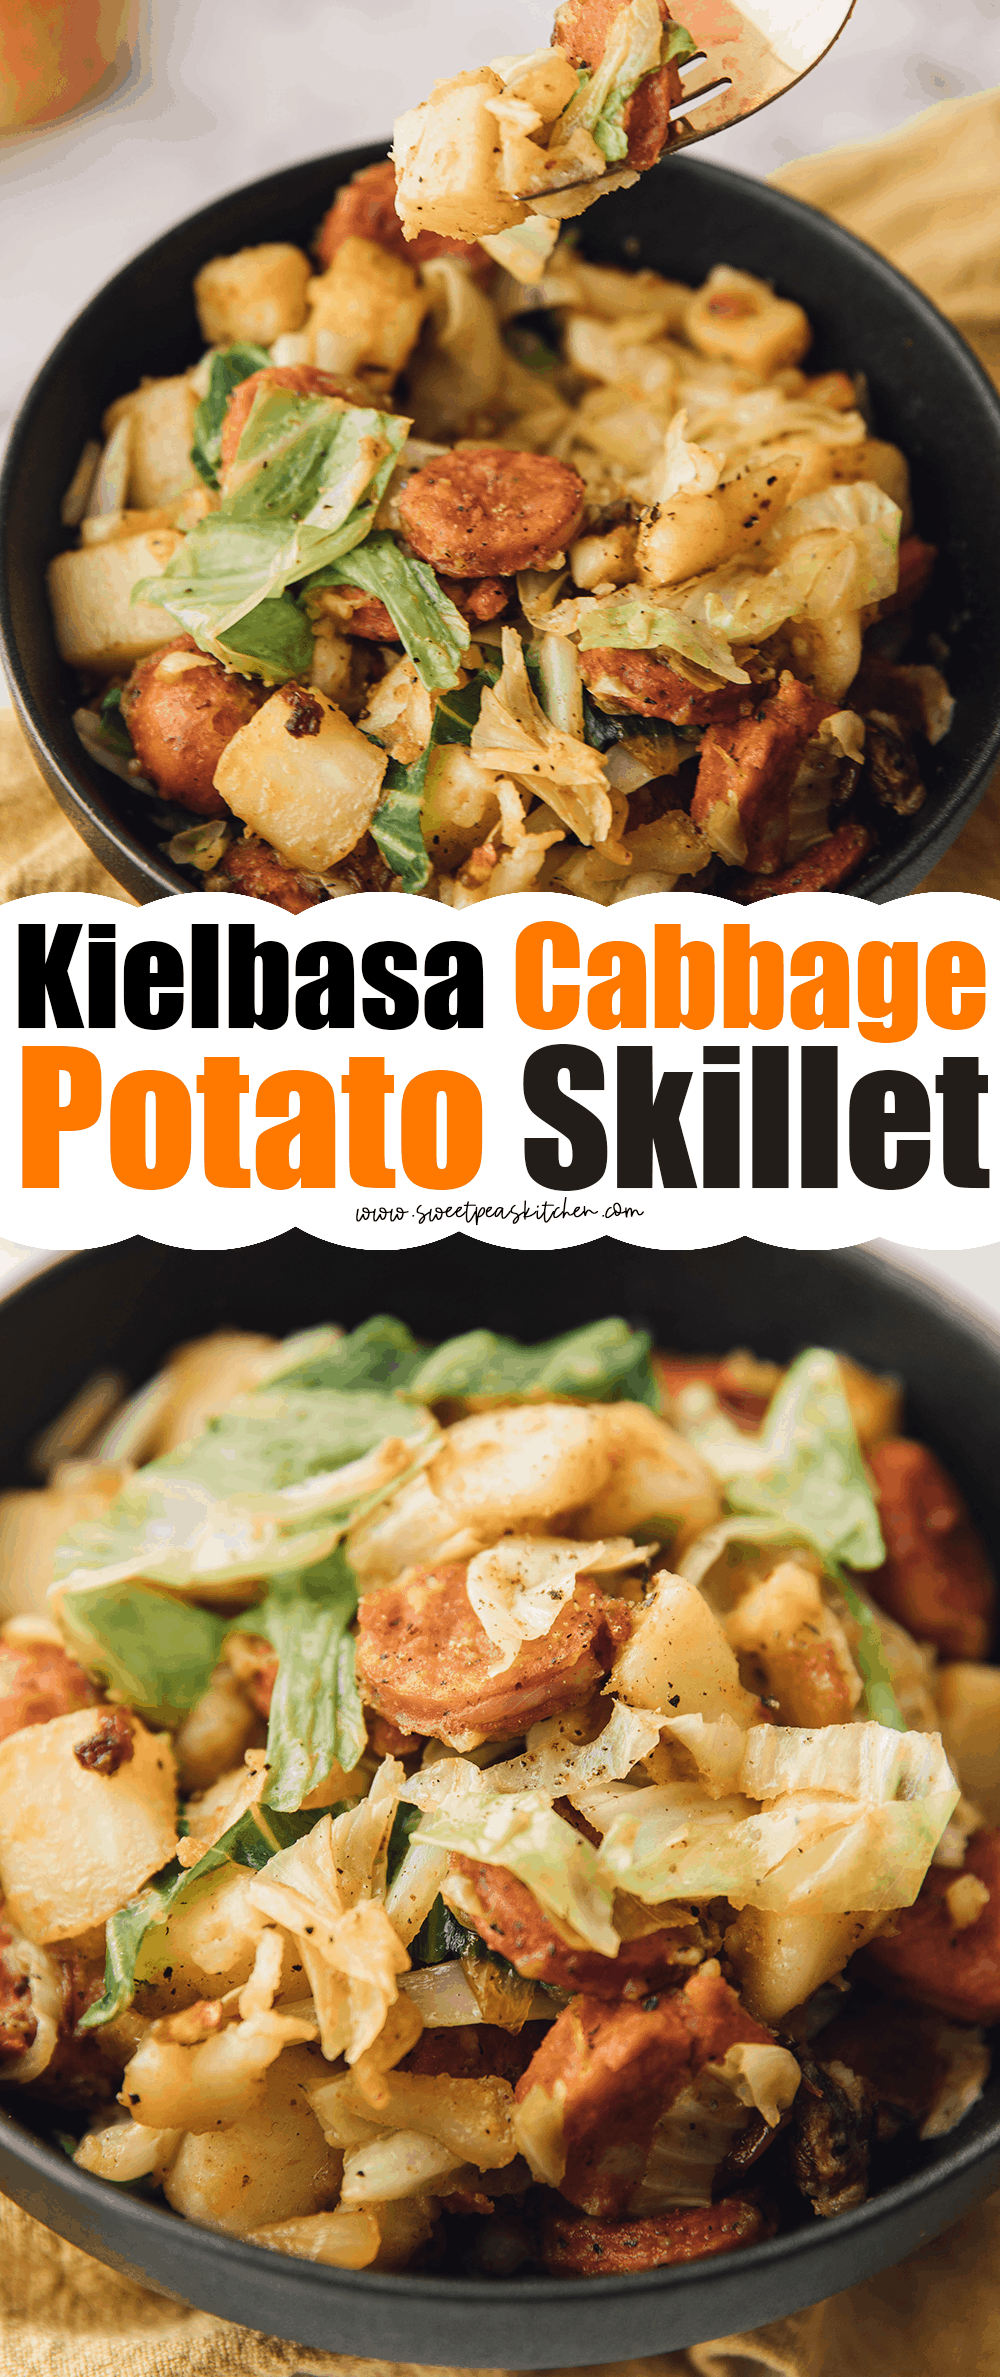 Kielbasa Cabbage Potato Skillet on pinterest